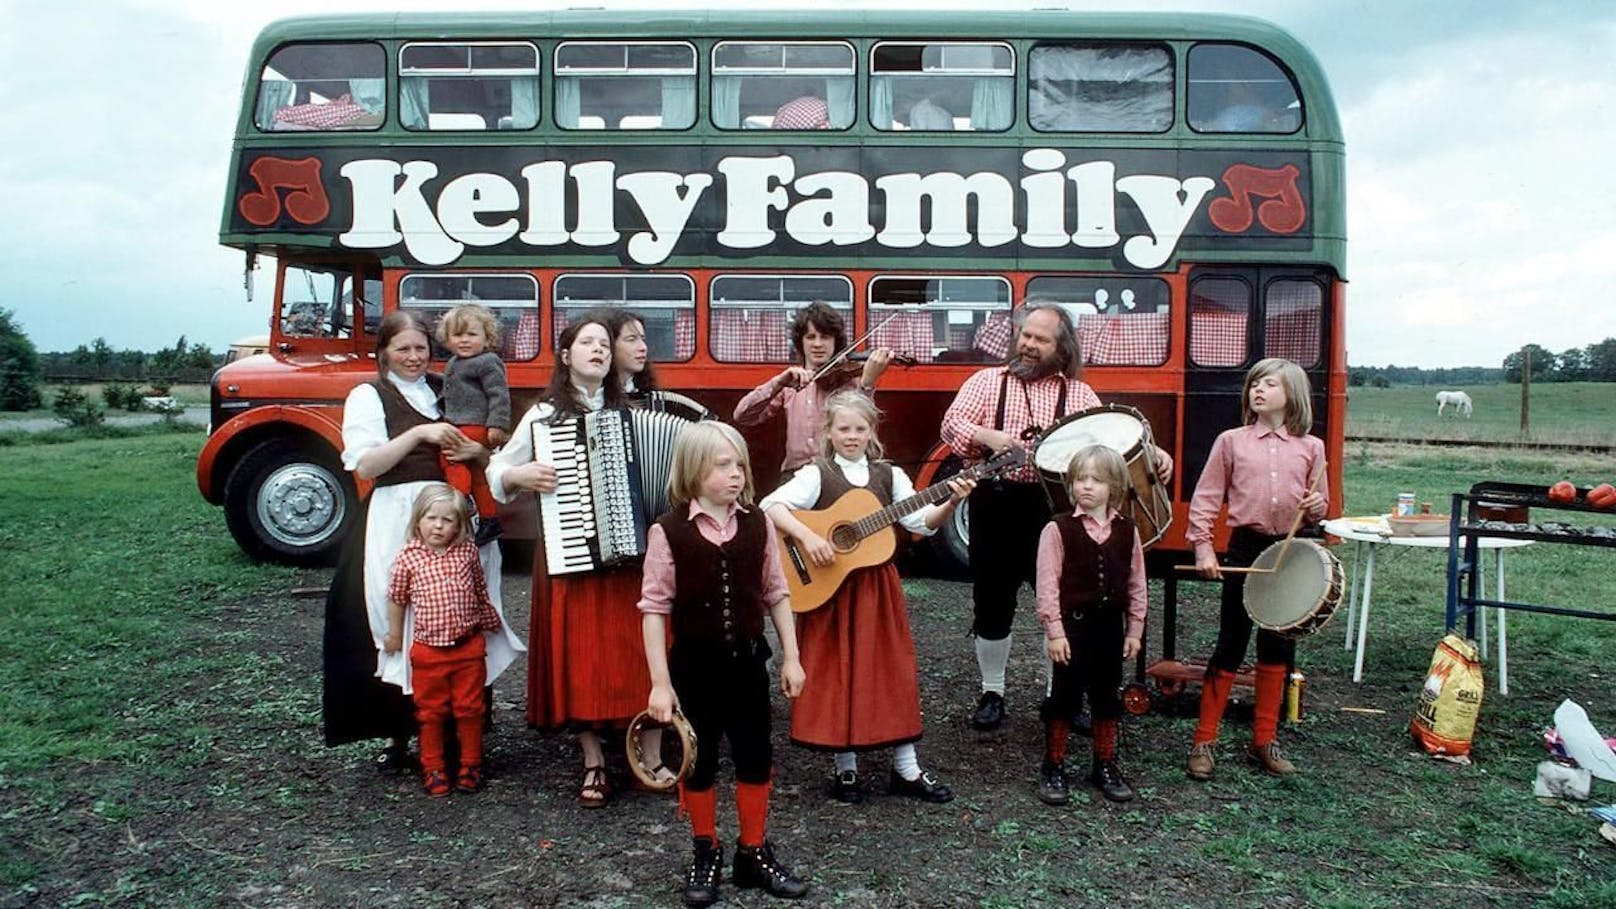 Kelly Family kommt mit Kult-Bus in Wiener Stadthalle